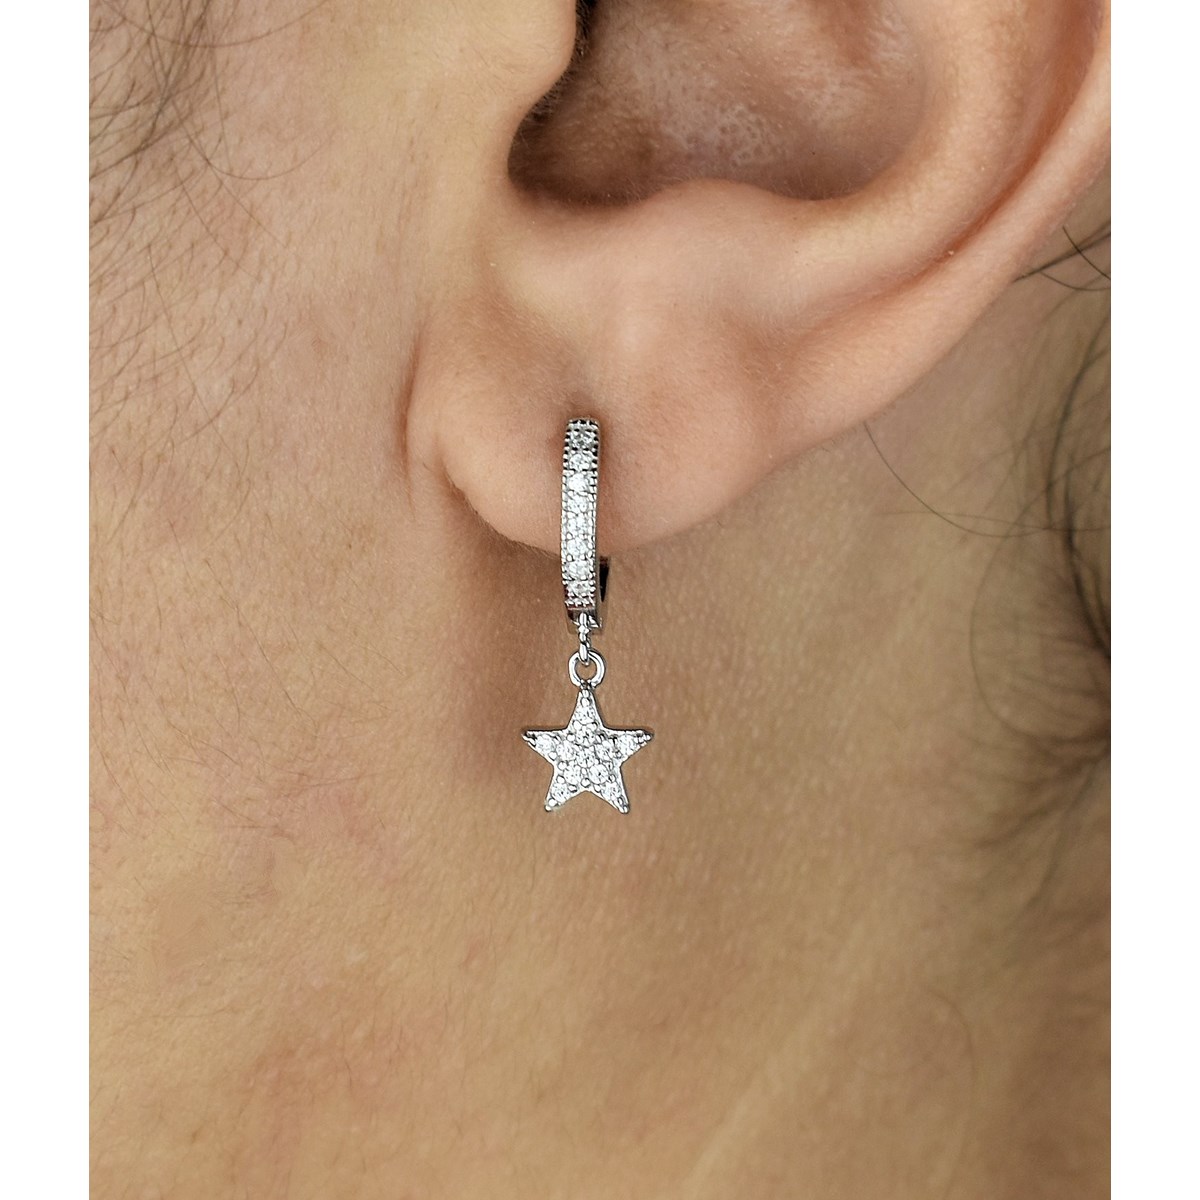 Boucles d'oreilles Mini Créoles étoile oxyde de zirconium pendante Argent 925 Rhodié - vue 2